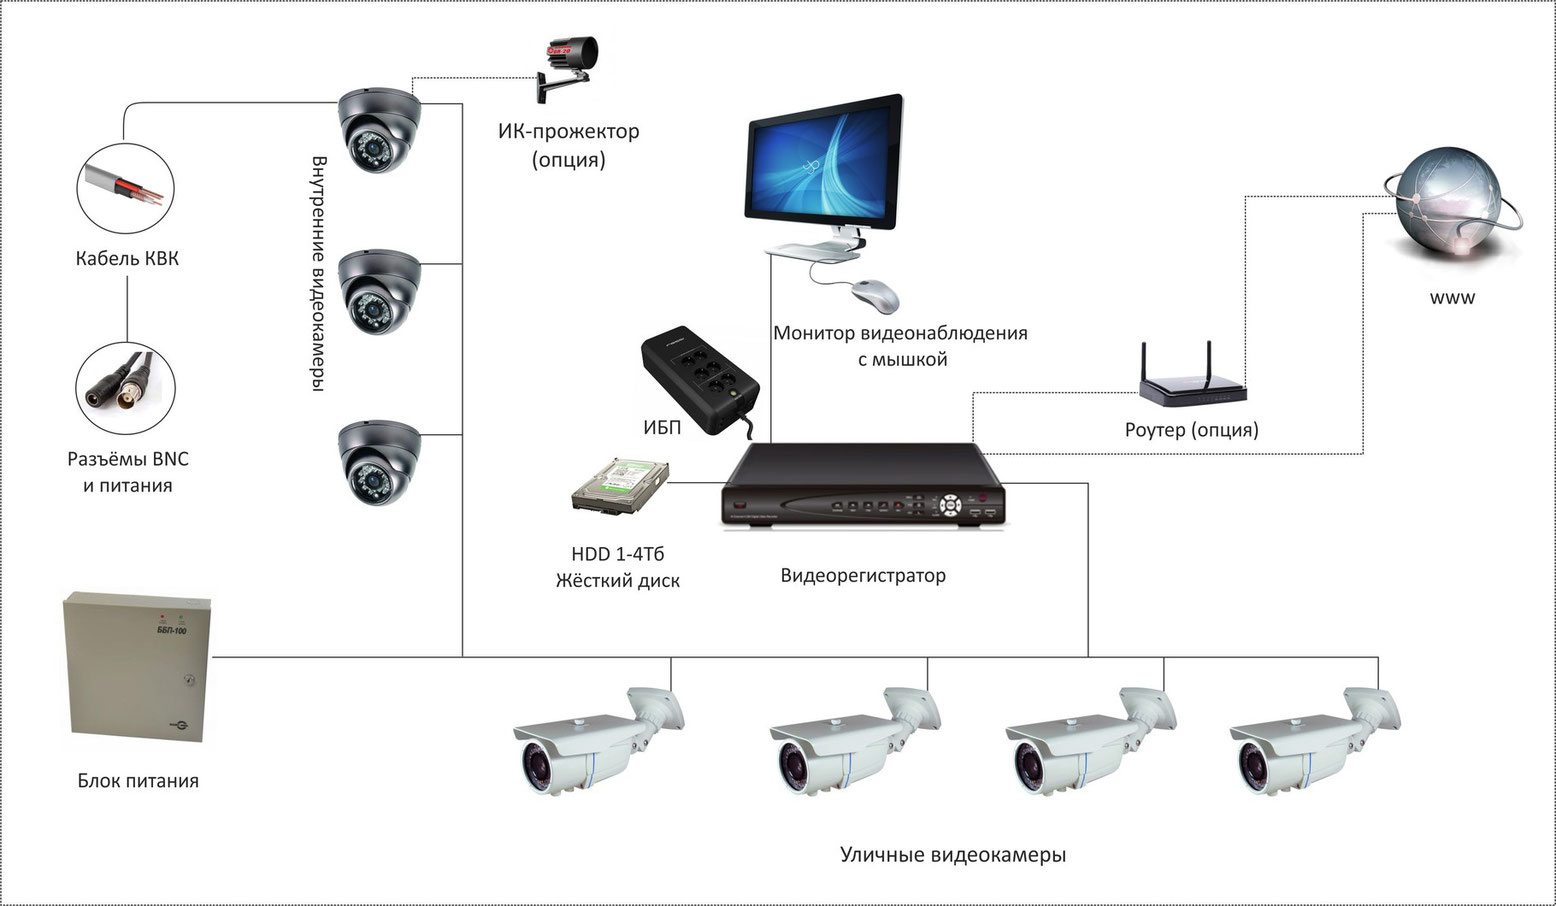 Ip-камера – зачем нужно видеонаблюдение для дома